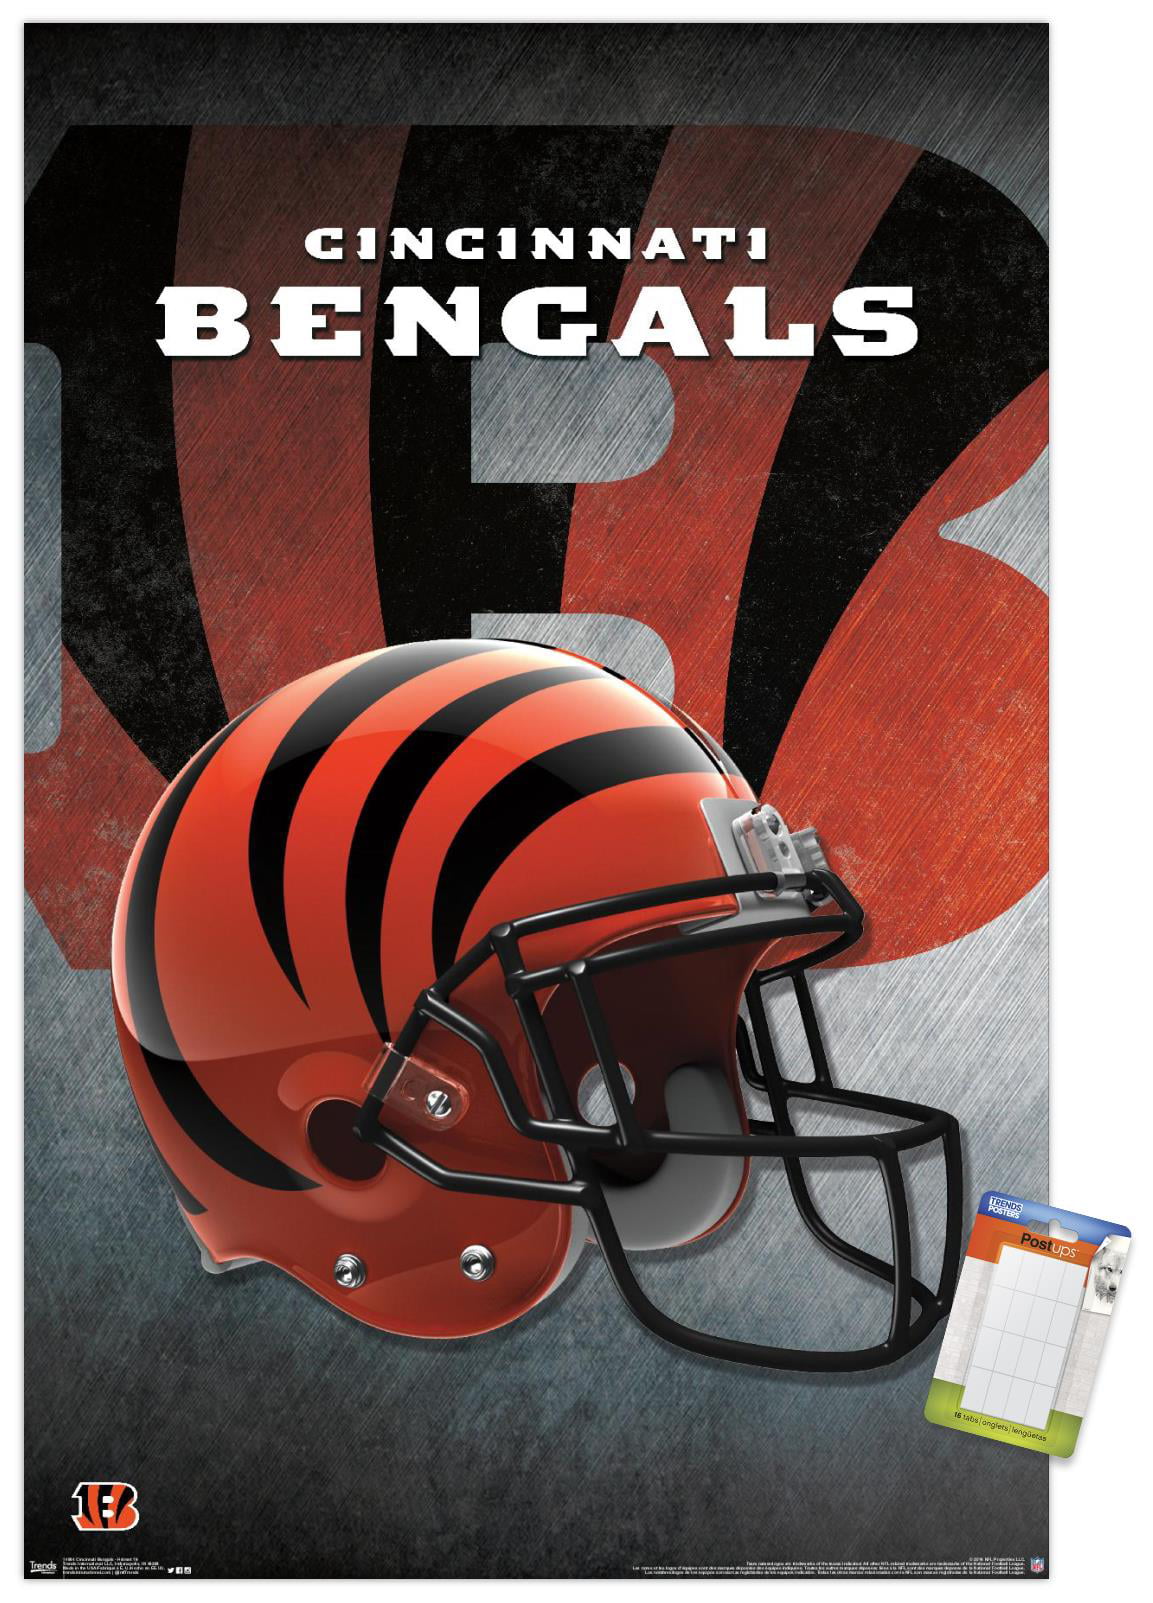 Cincinnati Football Who Dey Cincinnati Bengals Print Cincinnati Bengals Poster Cincinnati Sports Bengals Poster